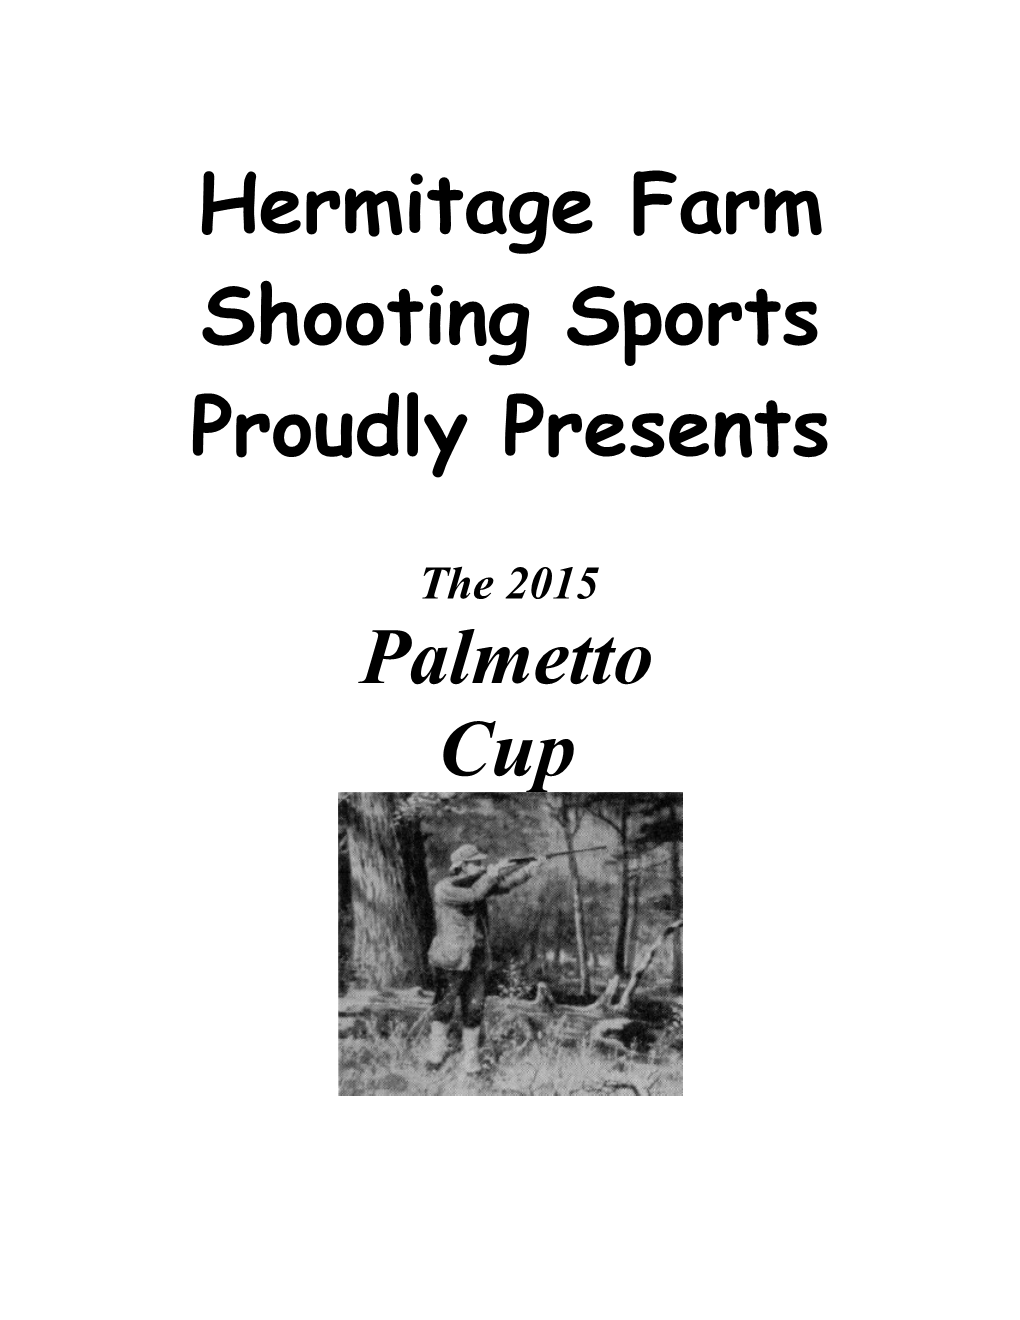 Hermitage Farm Shooting Sports